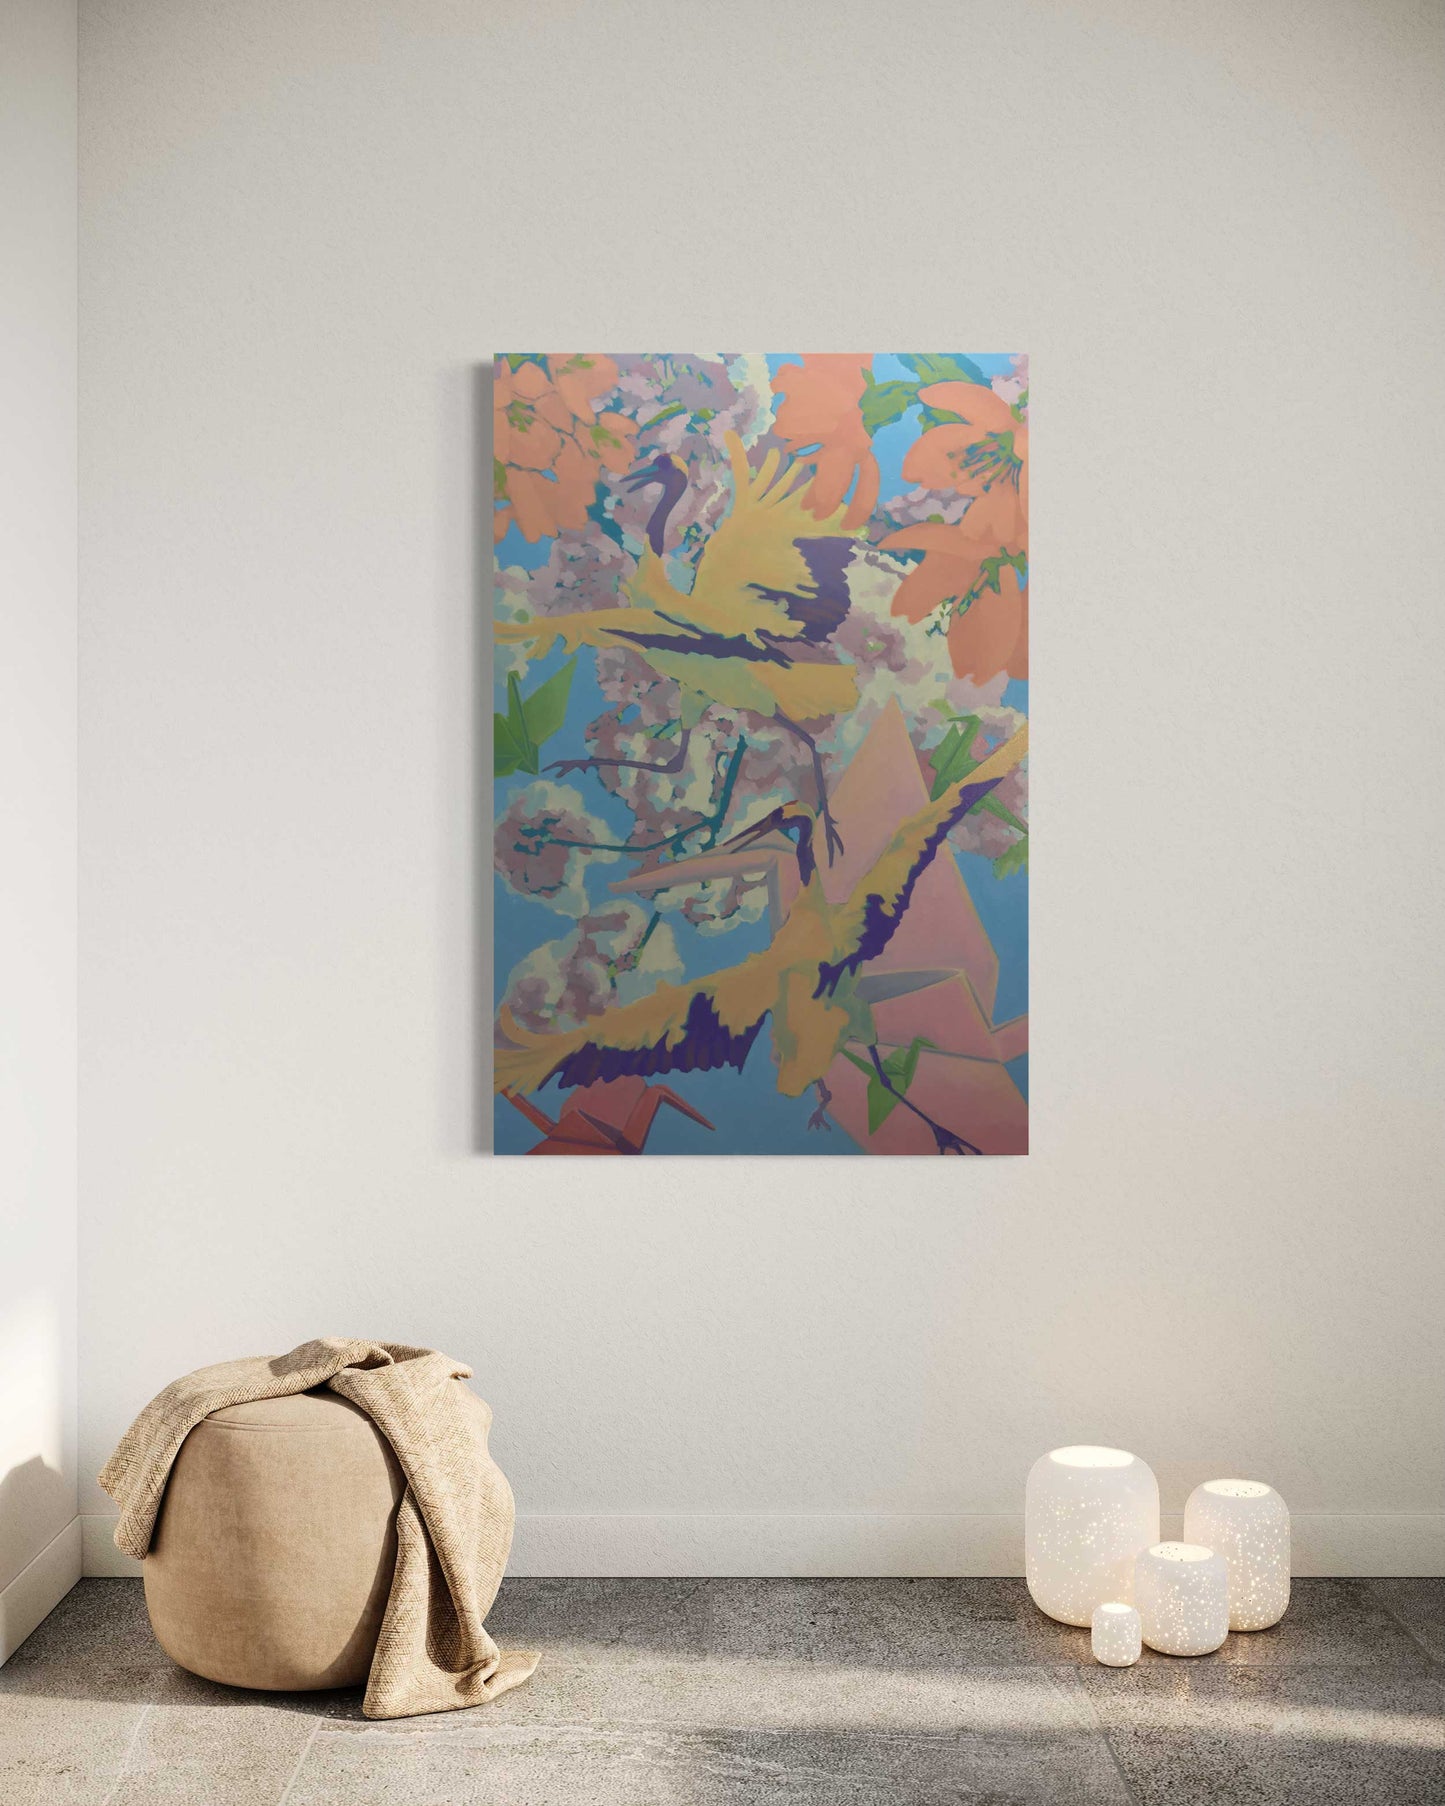 2019, Sadako, 100 x 150 cm